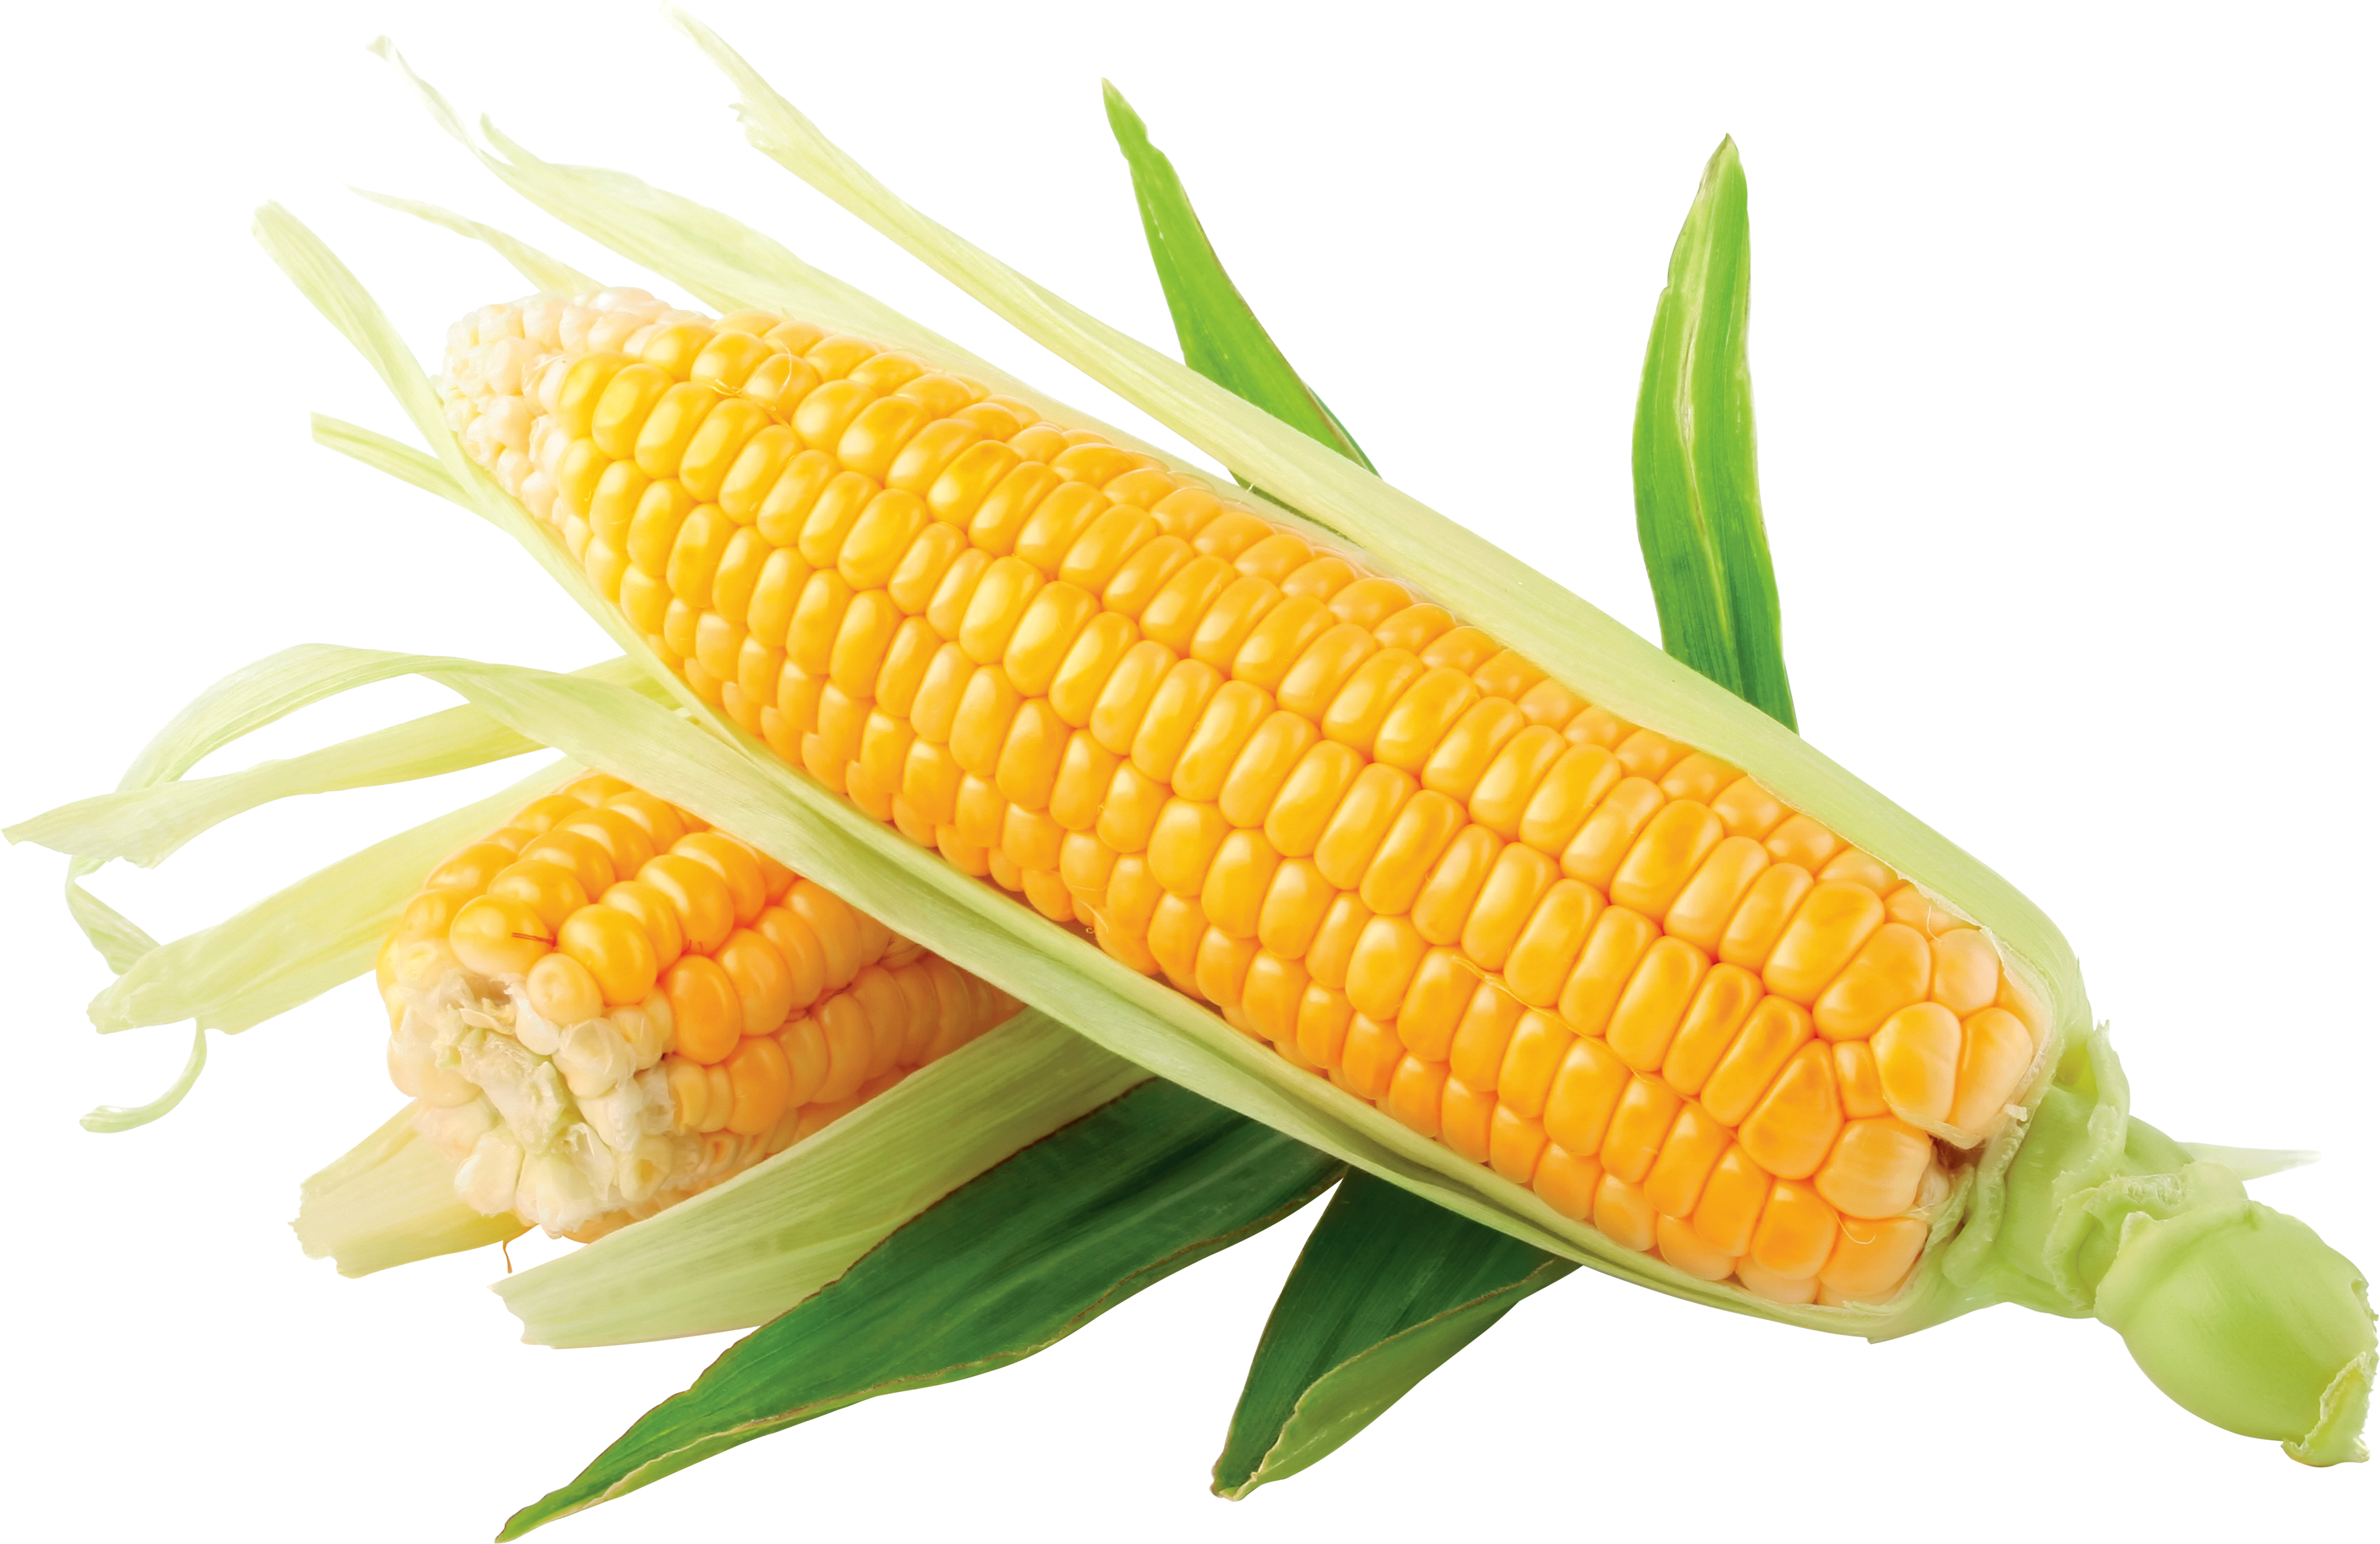 Corn clip art at vector clip art free 3 clipartcow clipartix